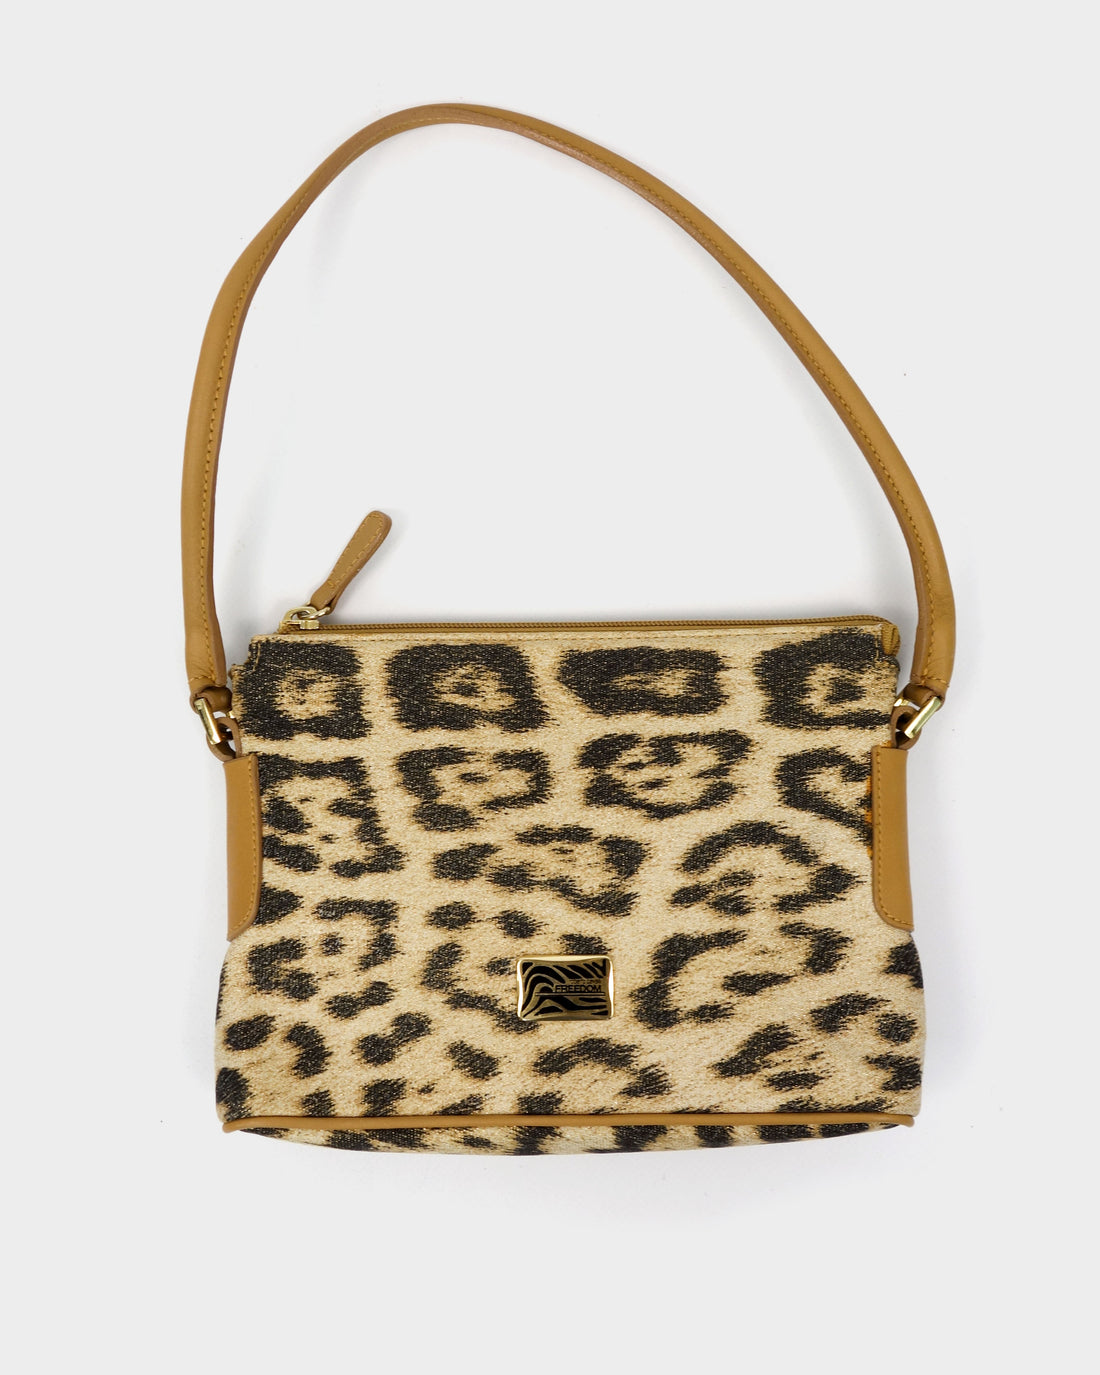 Cavalli Freedom Cheetah Print Leather Bag 2000's – Vintage TTS